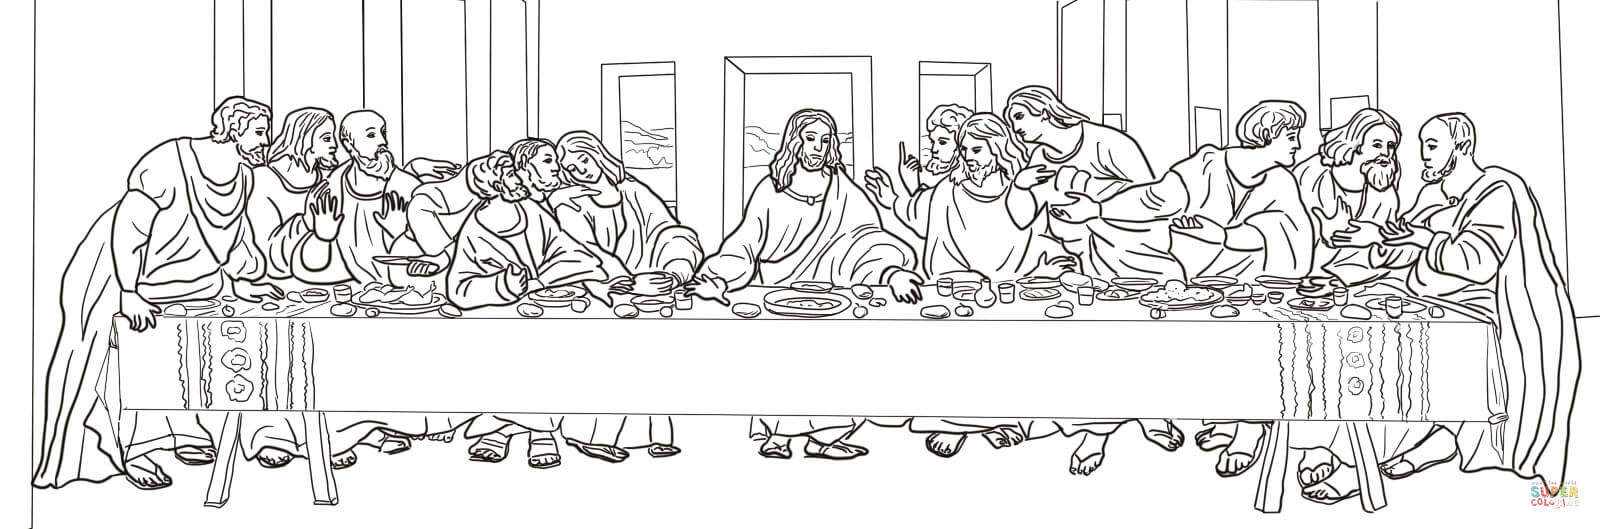 Leonardo Da Vinci The Last Supper Coloring Page The Last Supper Leonardo Da Vinci Coloring Page Free Printable